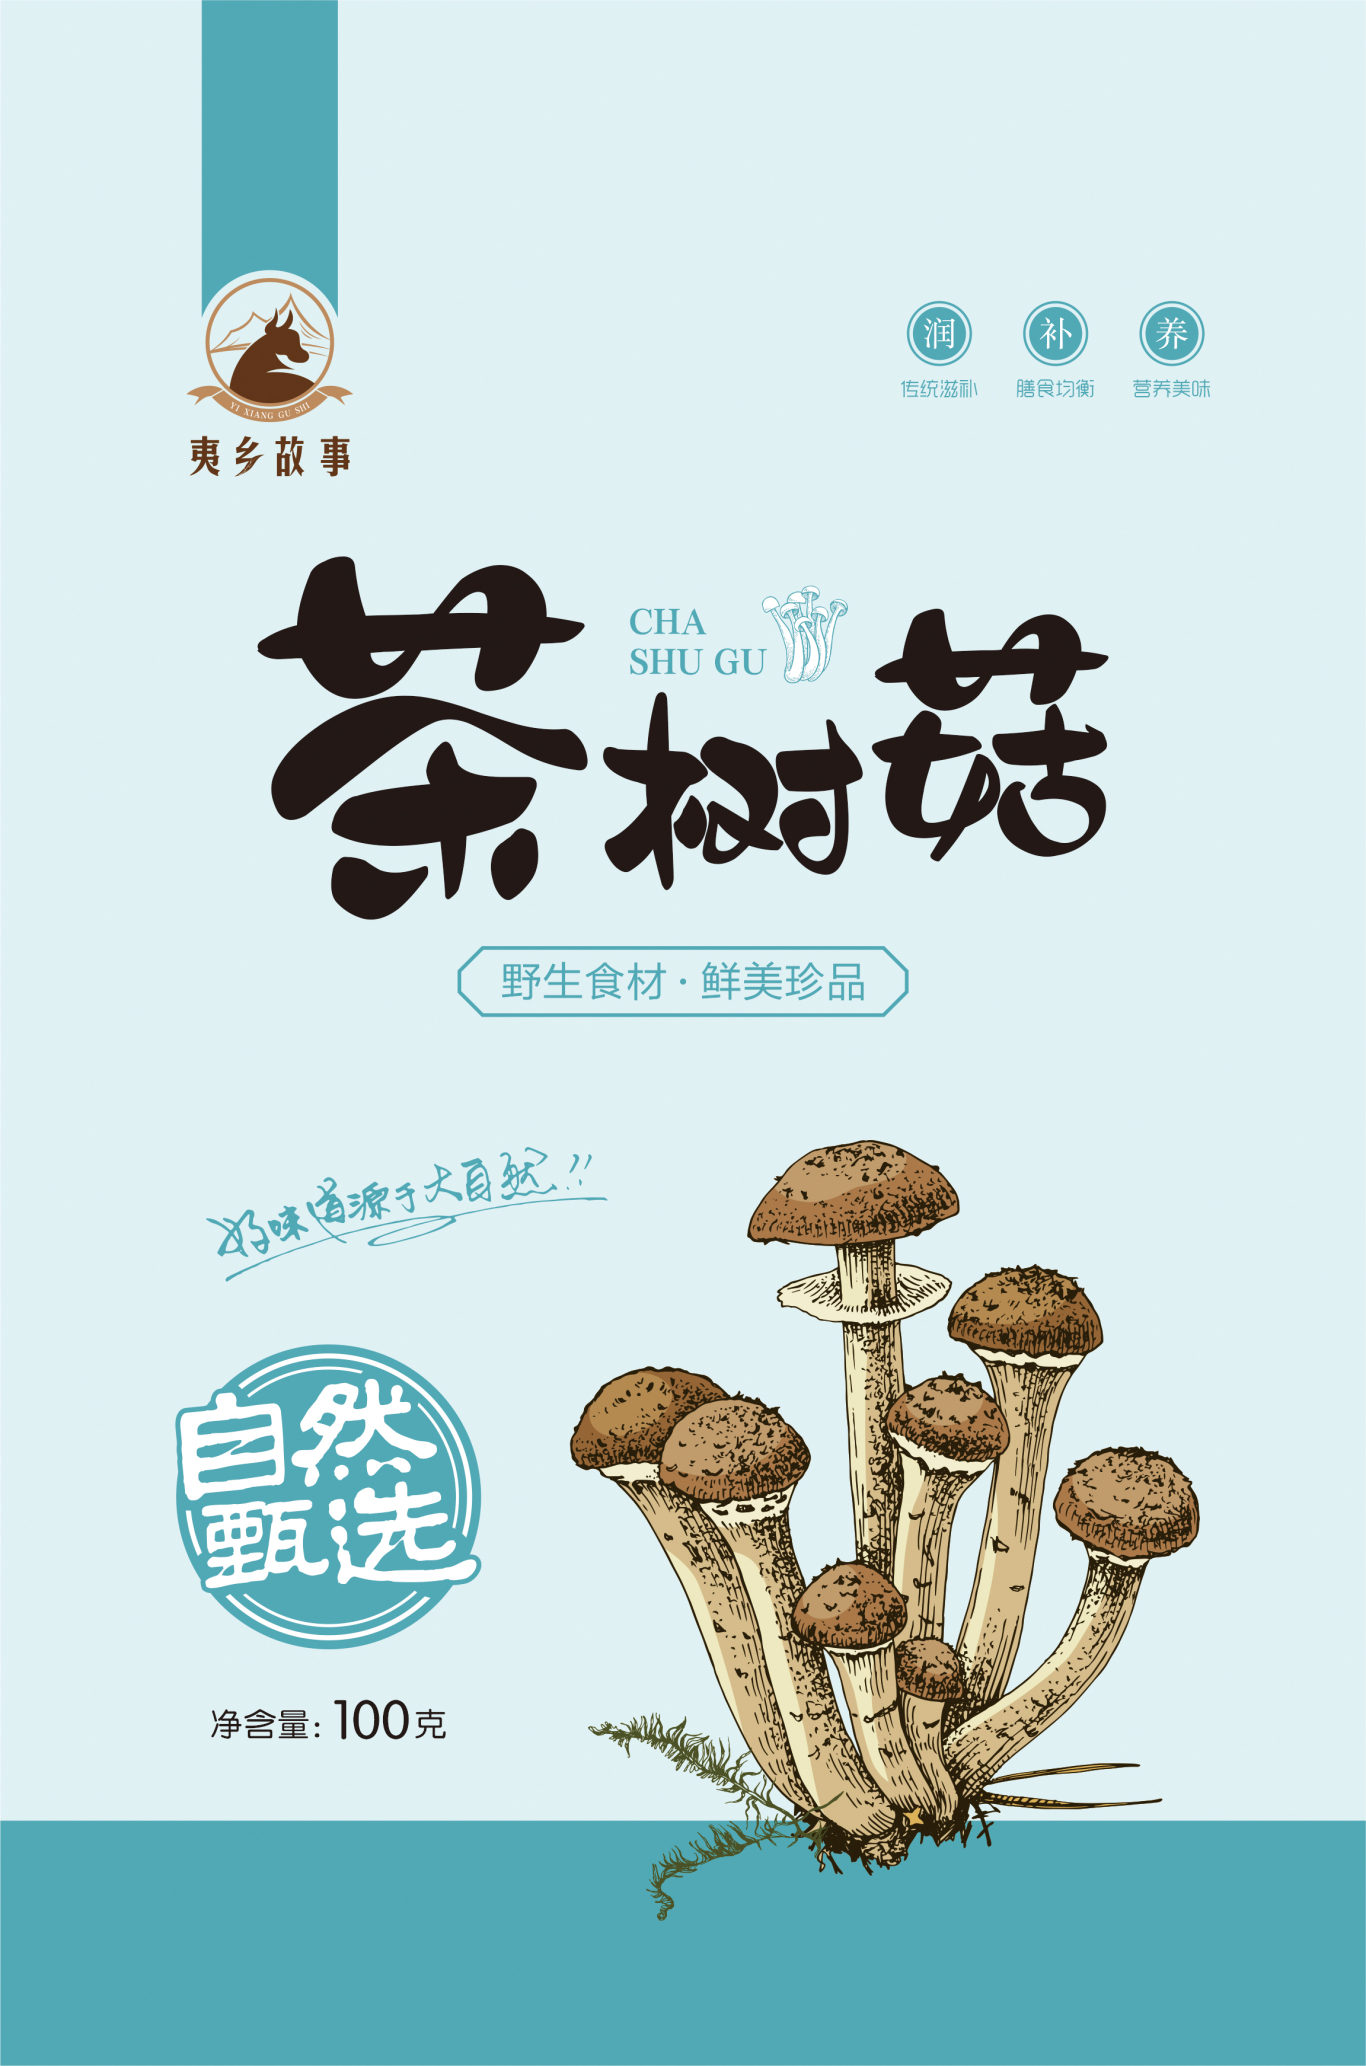 蘑菇包裝設計圖3